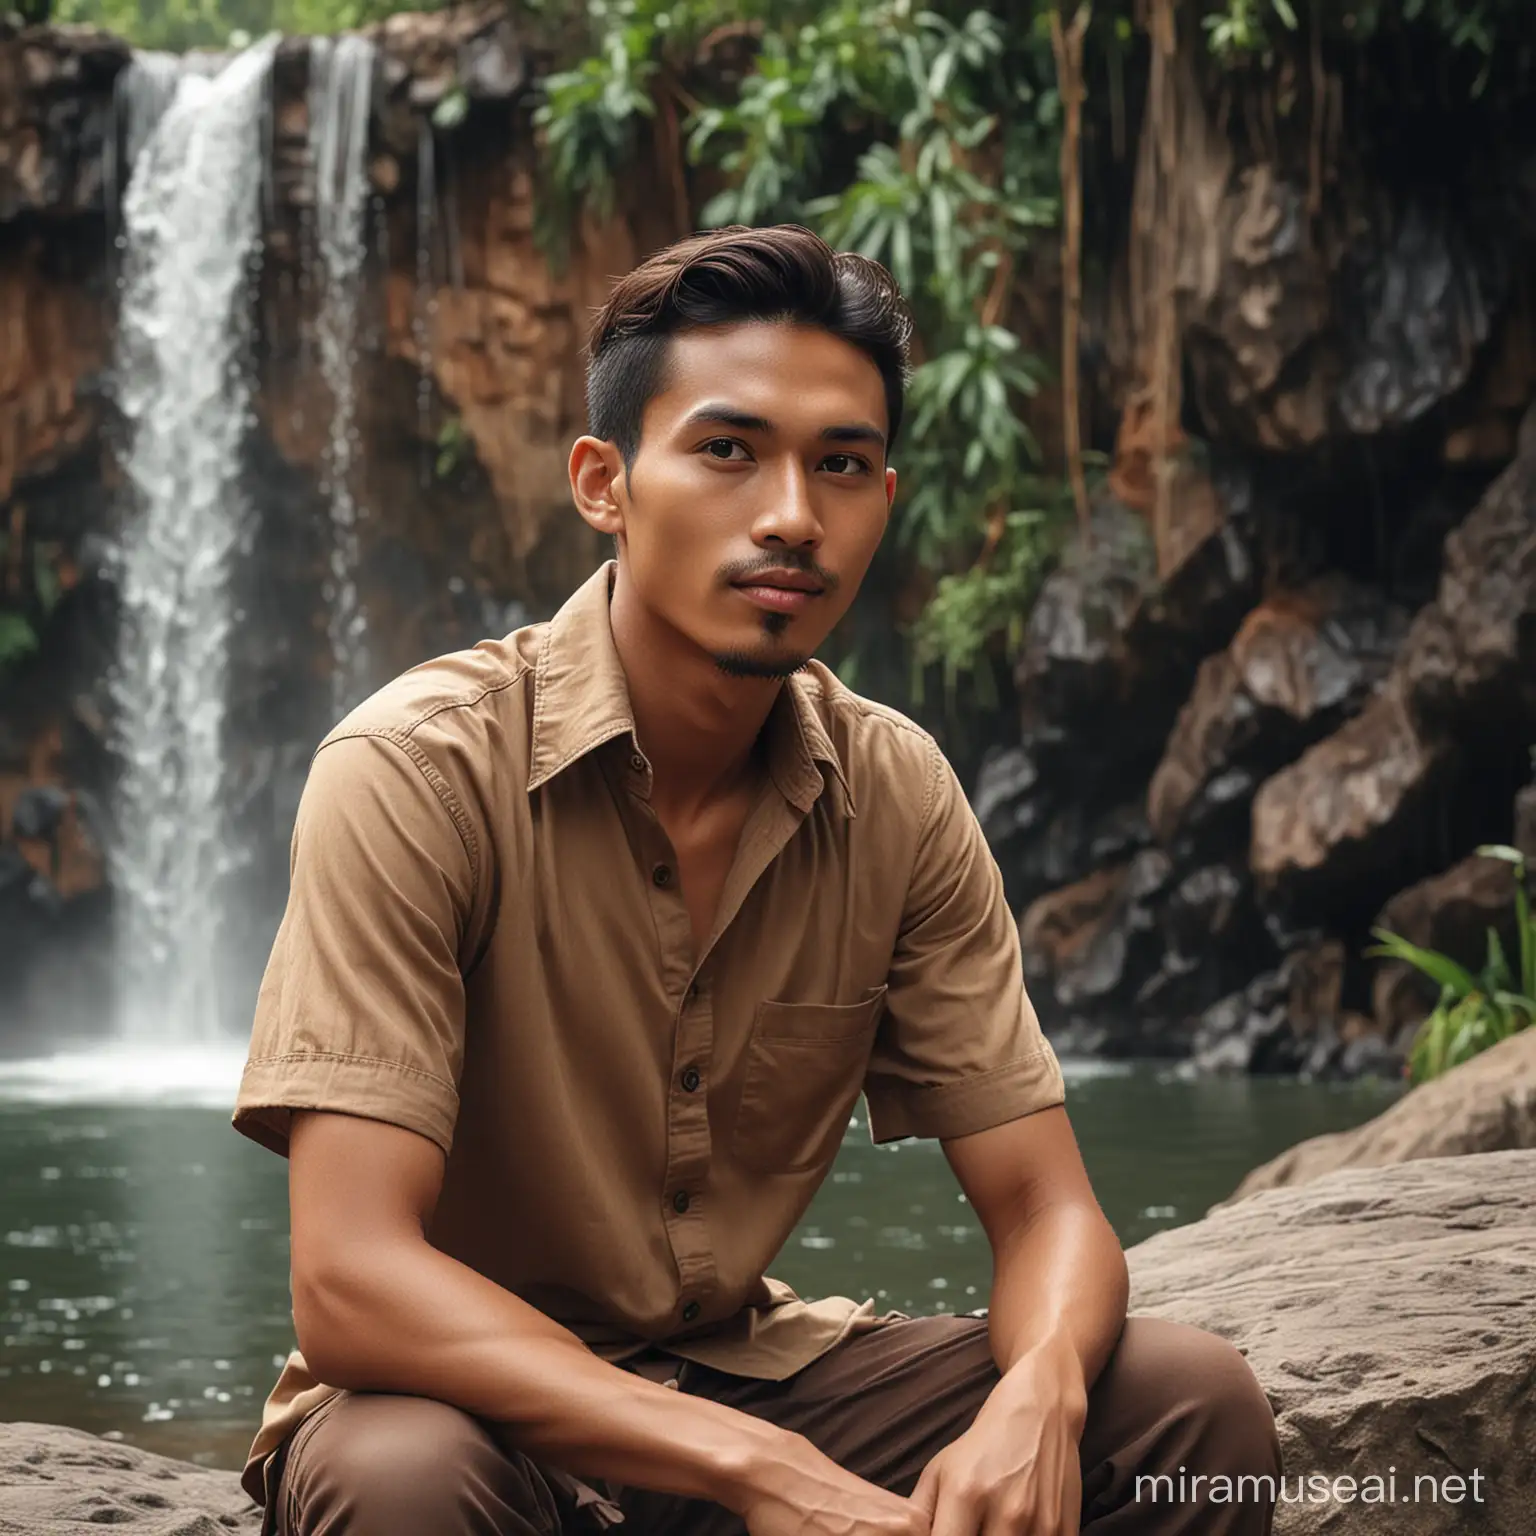 Javanese Man Sitting by Waterfall in Brown Shirt